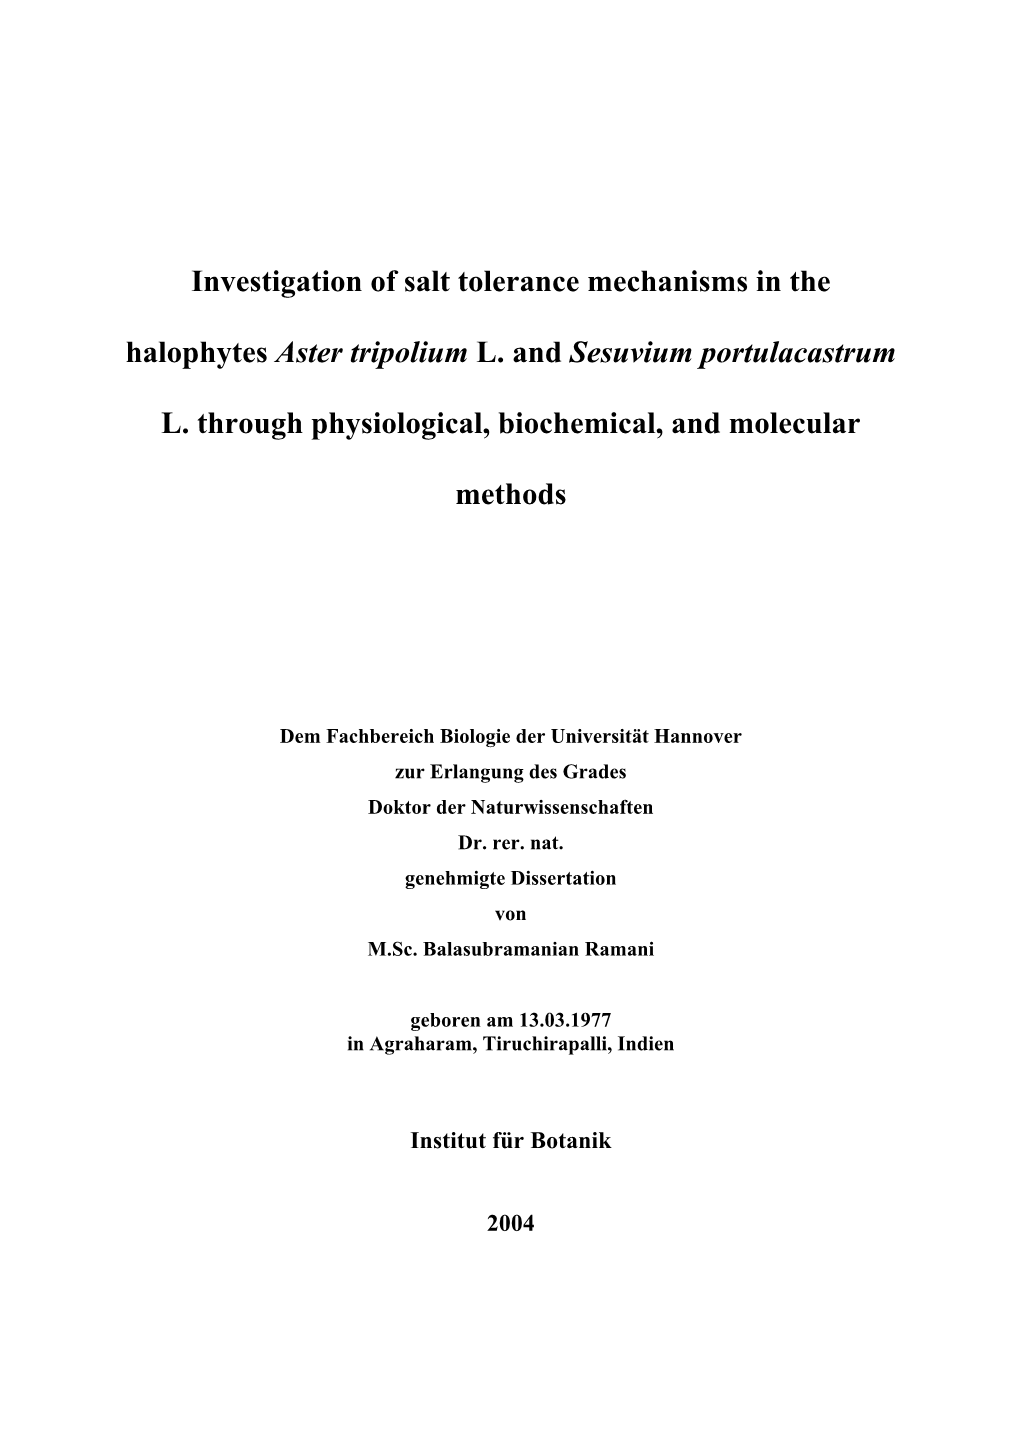 Investigation of Salt Tolerance Mechanisms in the Halophytes Aster Tripolium L